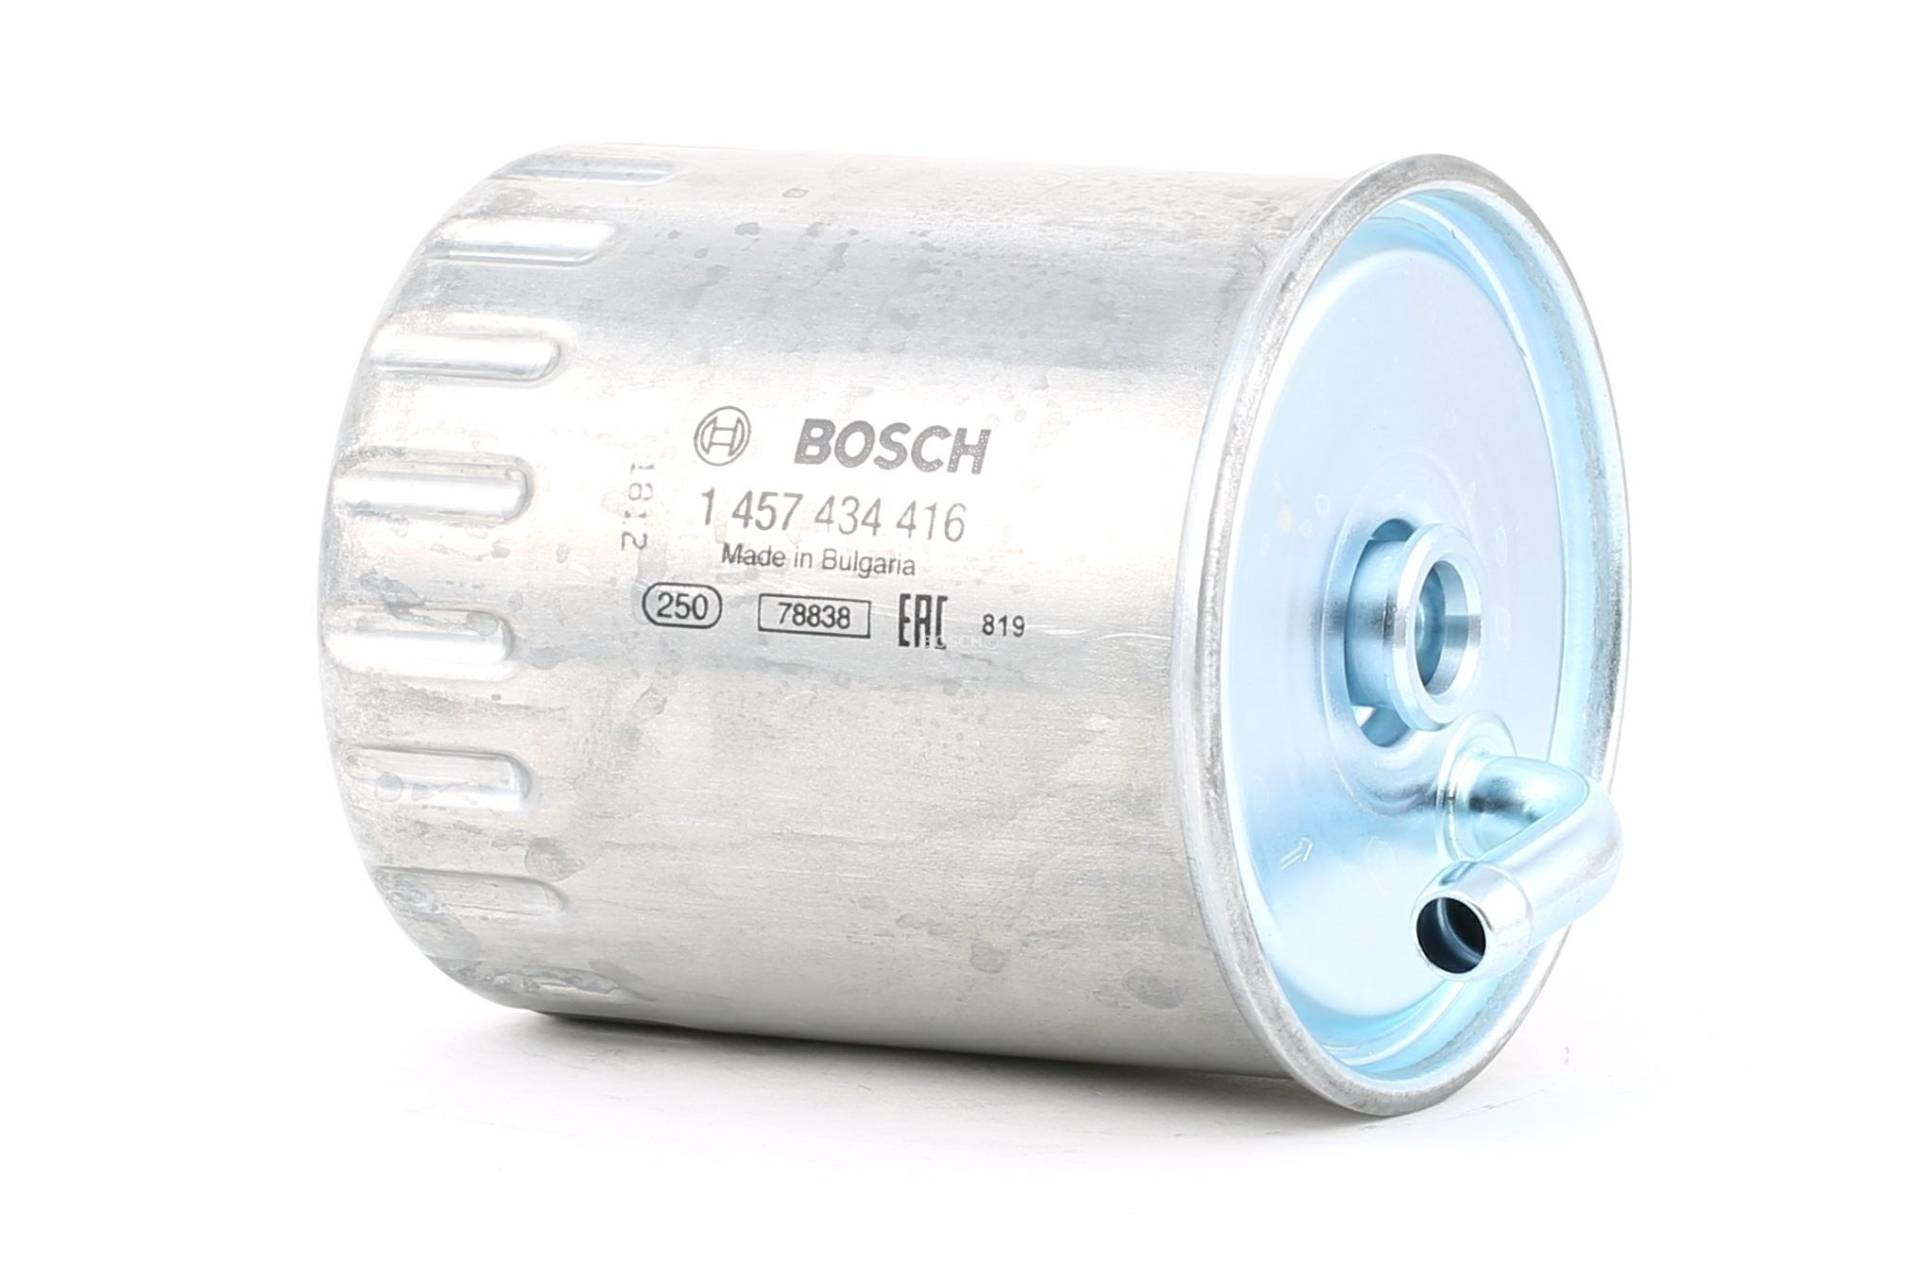 BOSCH Kraftstofffilter MERCEDES-BENZ 1 457 434 416 6110901252,6110910001,6110920001 Leitungsfilter,Spritfilter 6110920701,A6110901252,A6110910001 von Bosch